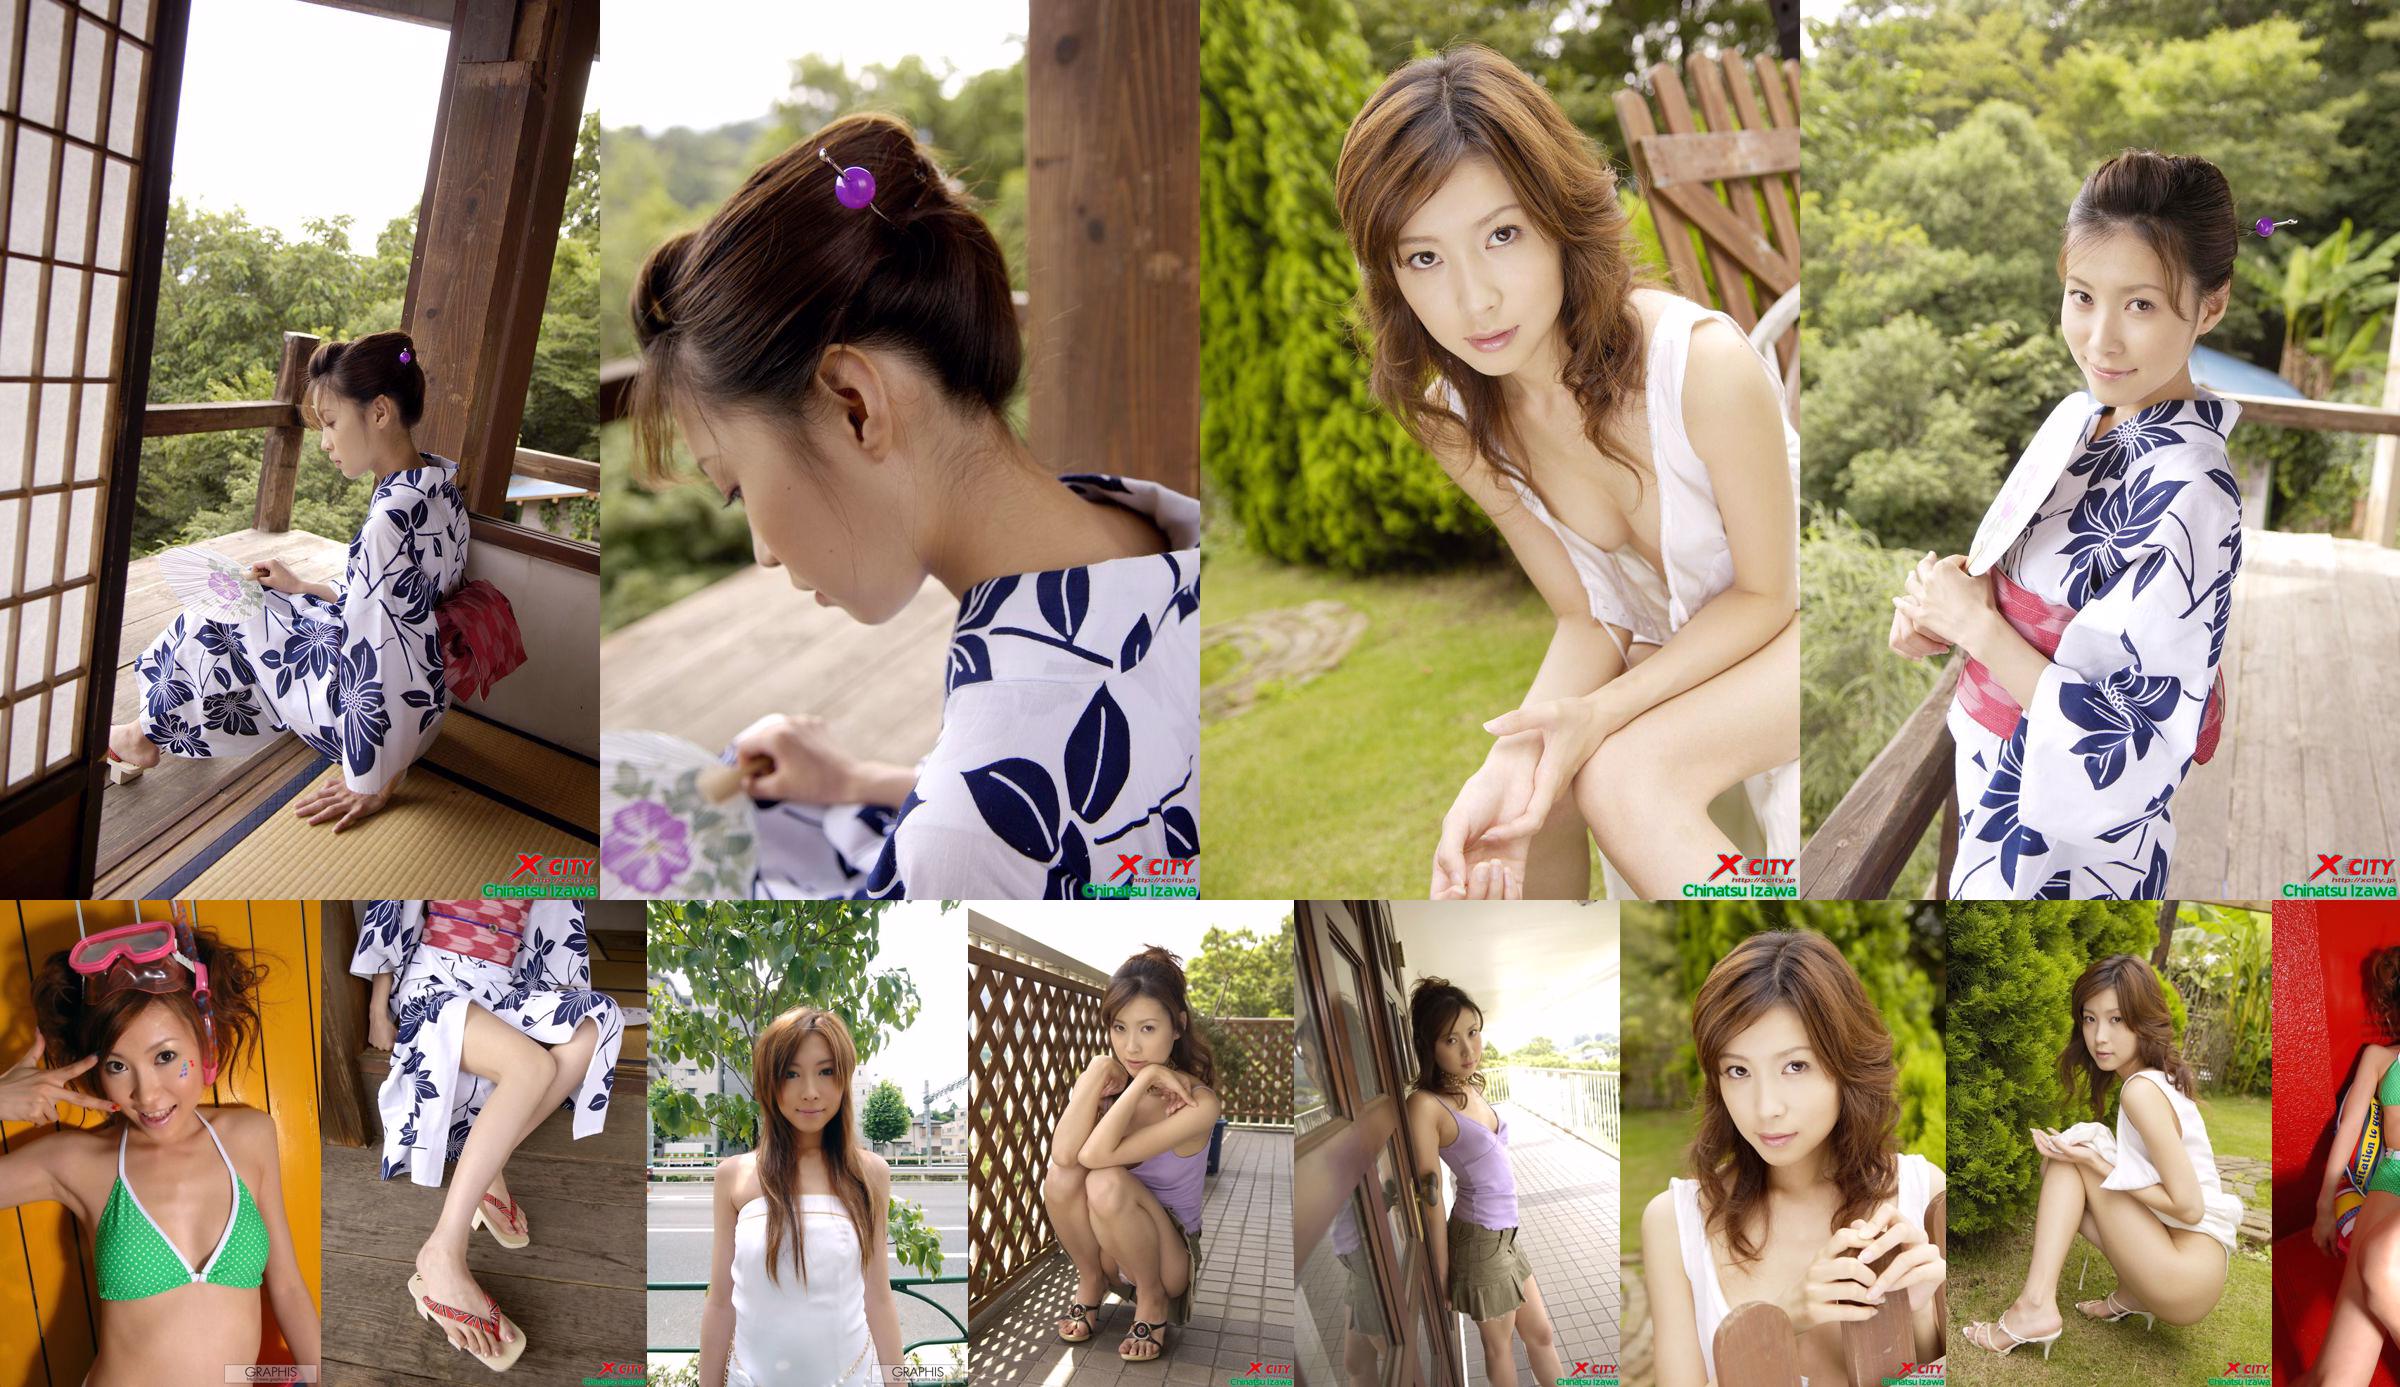 [X-City] WEB No.020 Izawa Chika "Secret Summer" No.573c67 Trang 4